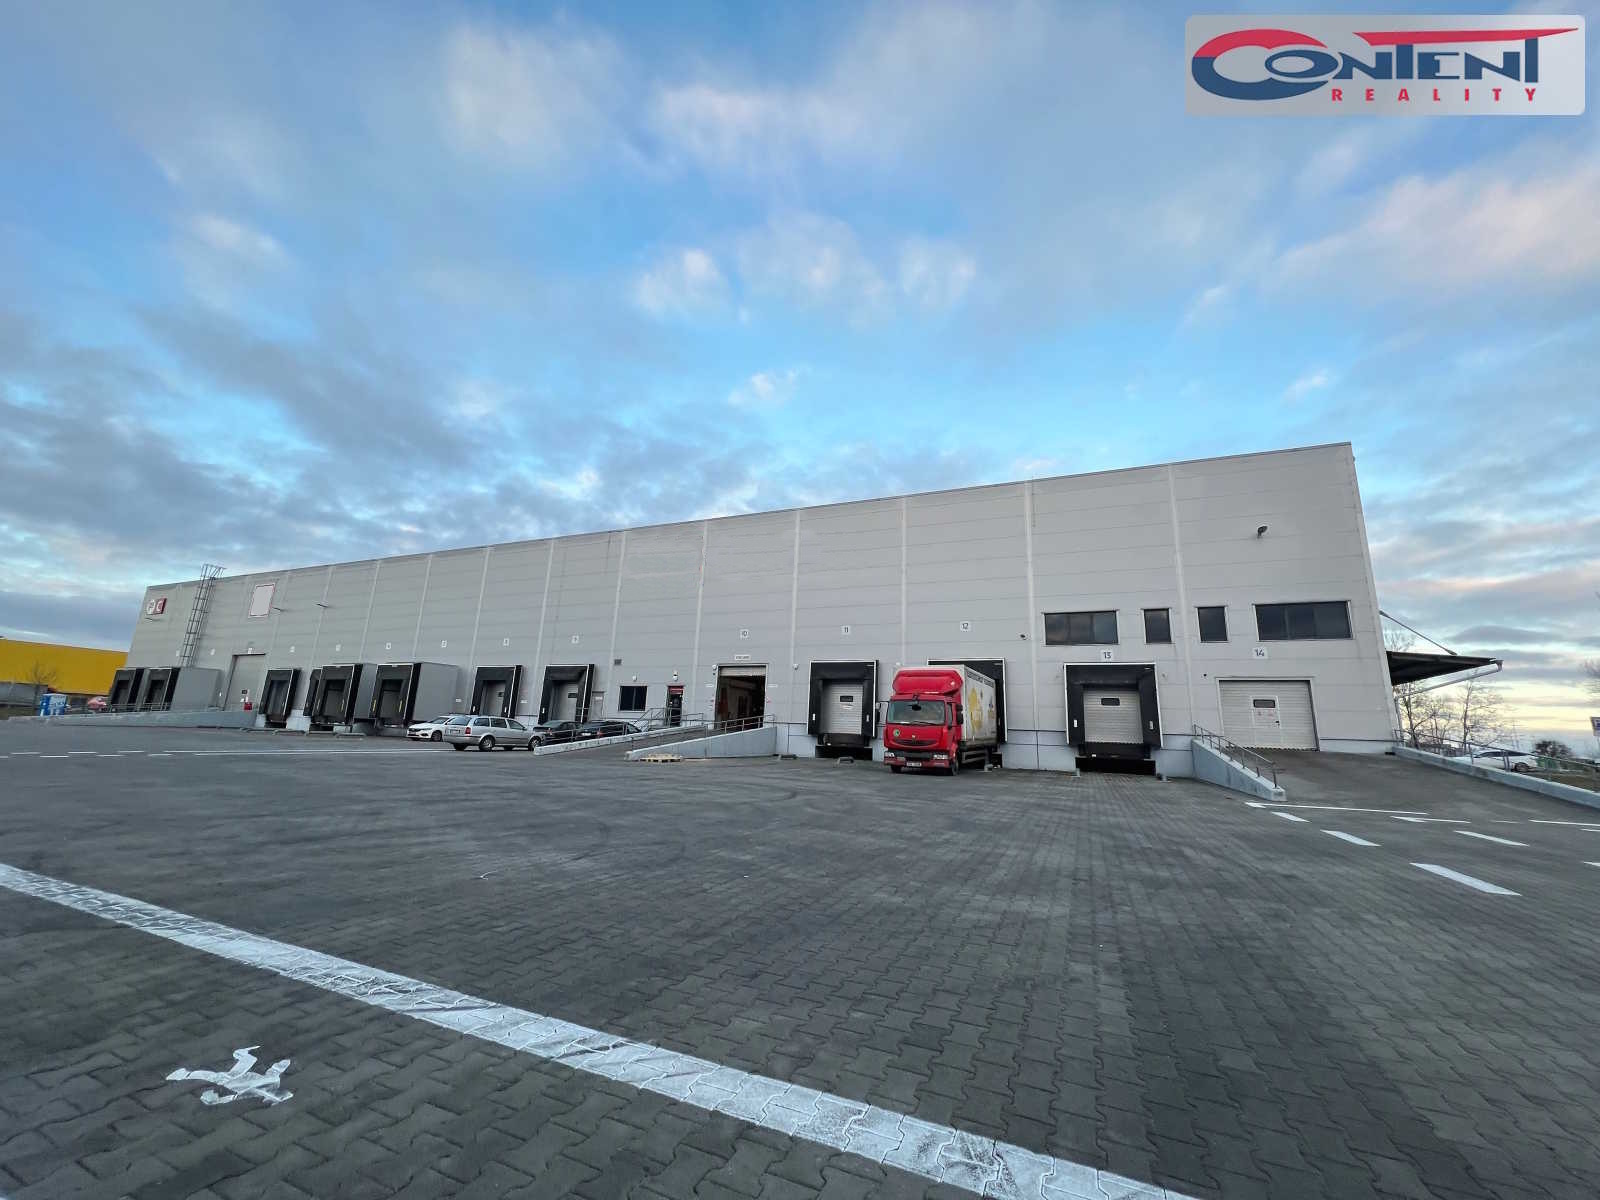 Pronájem skladu nebo výrobních prostor 1.368 m², Olomouc - Nemilany